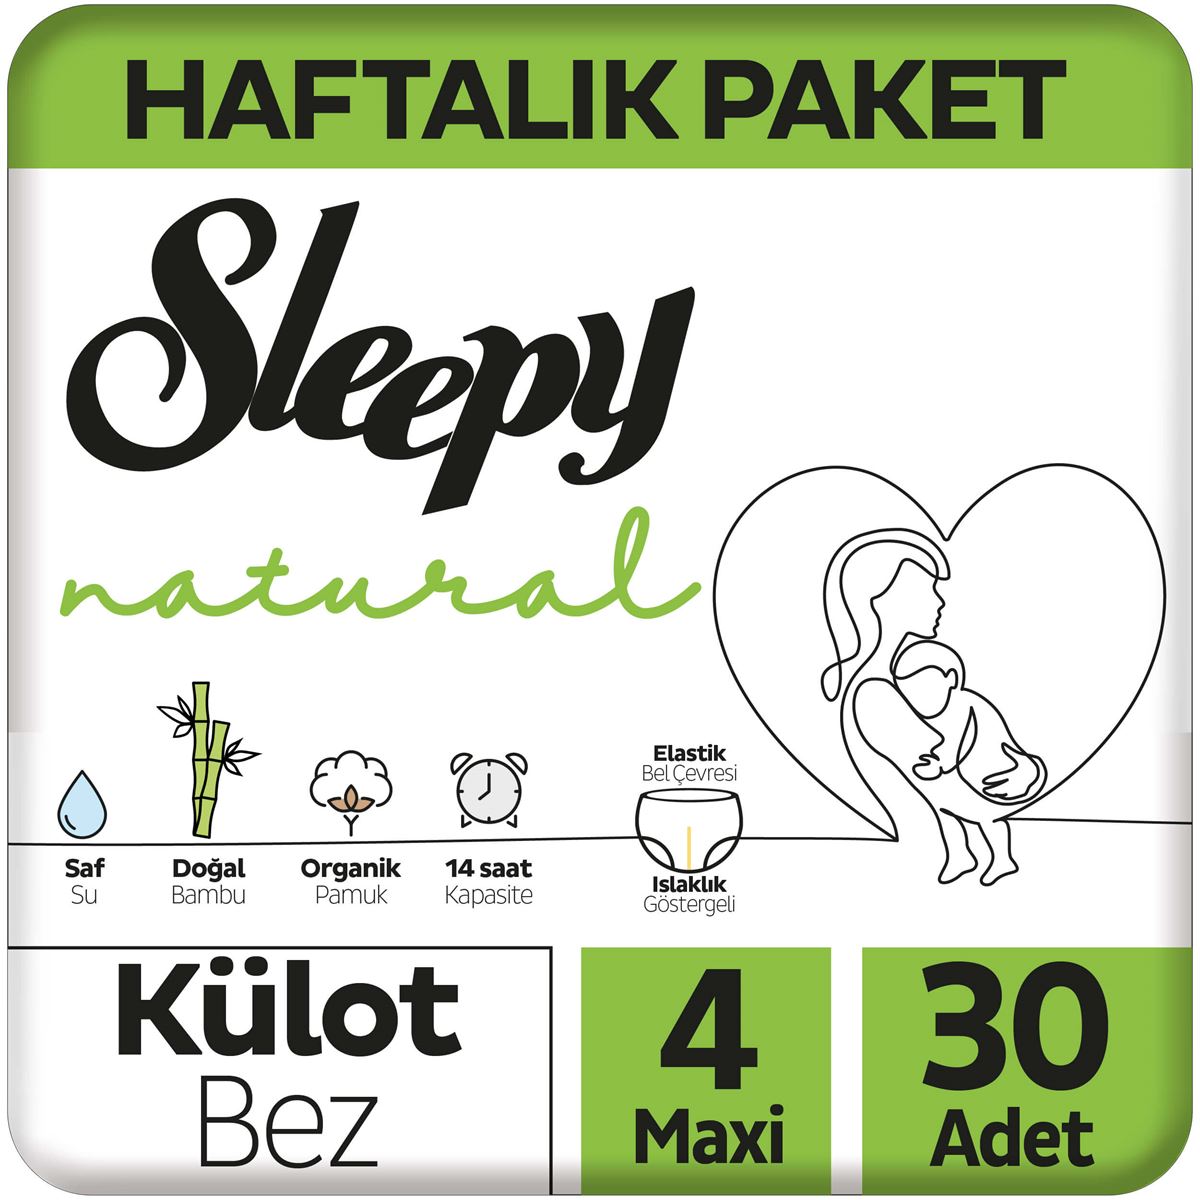 Sleepy Natural Haftalık Paket Külot Bez 4 Numara Maxi 30 Adet